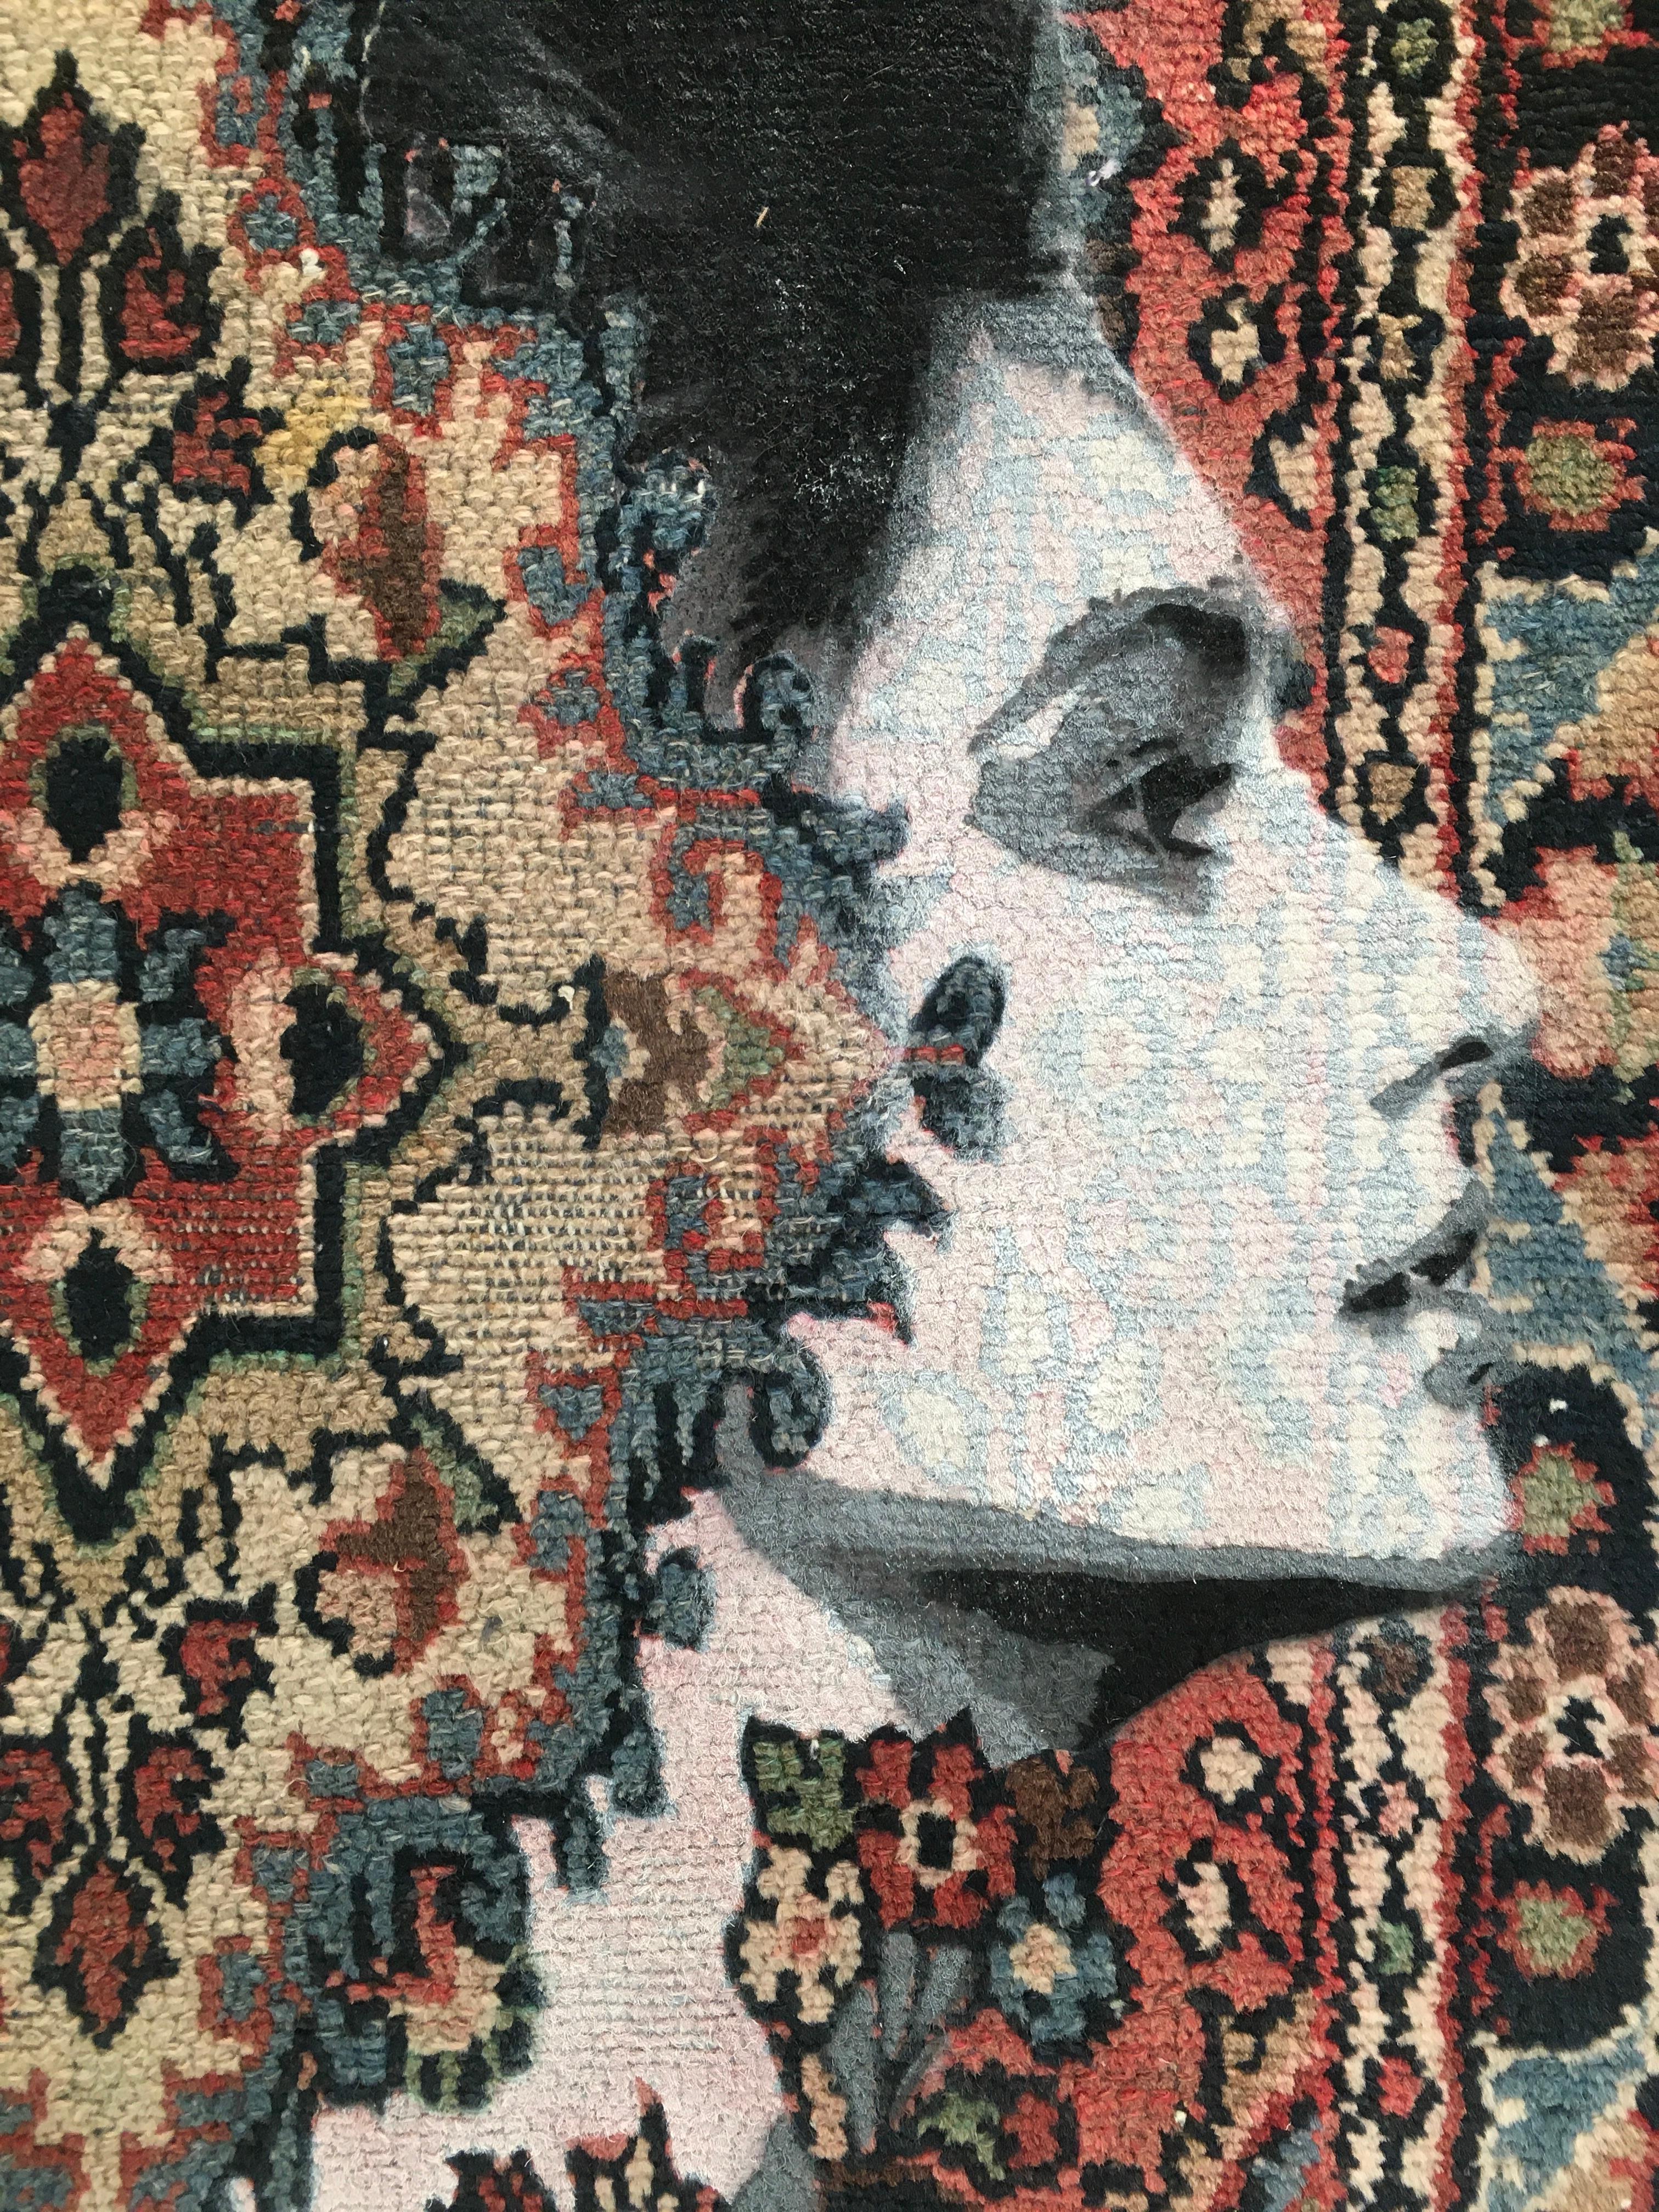 In Her Head In The End, Sprühfarbe und Marker auf altem iranischen Teppich (Grau), Figurative Painting, von Nafir